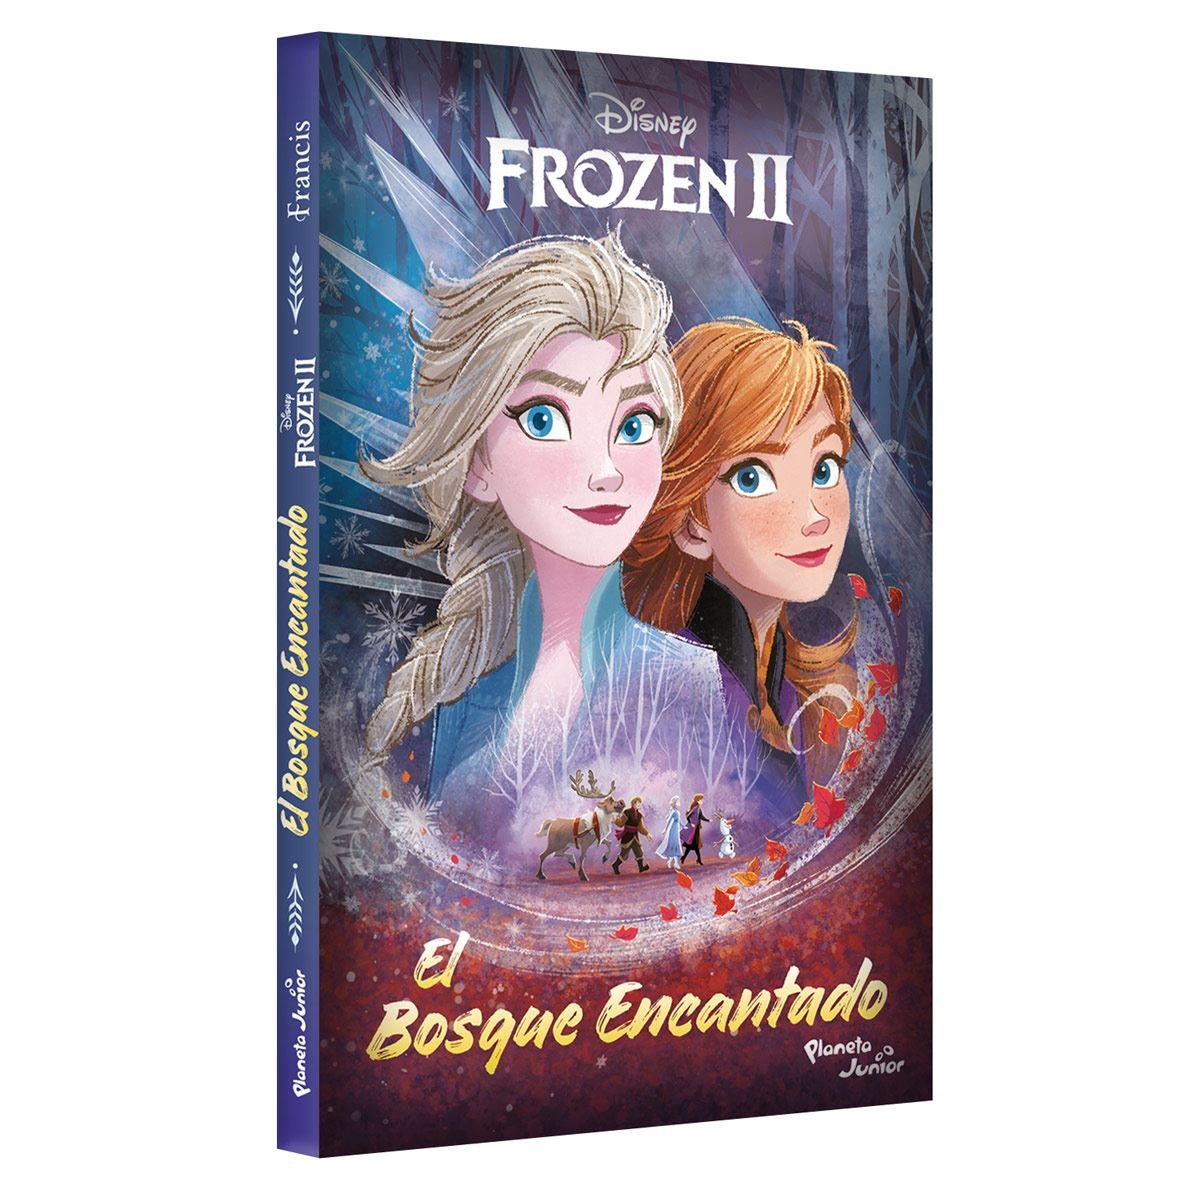 Frozen II. El bosque encantado